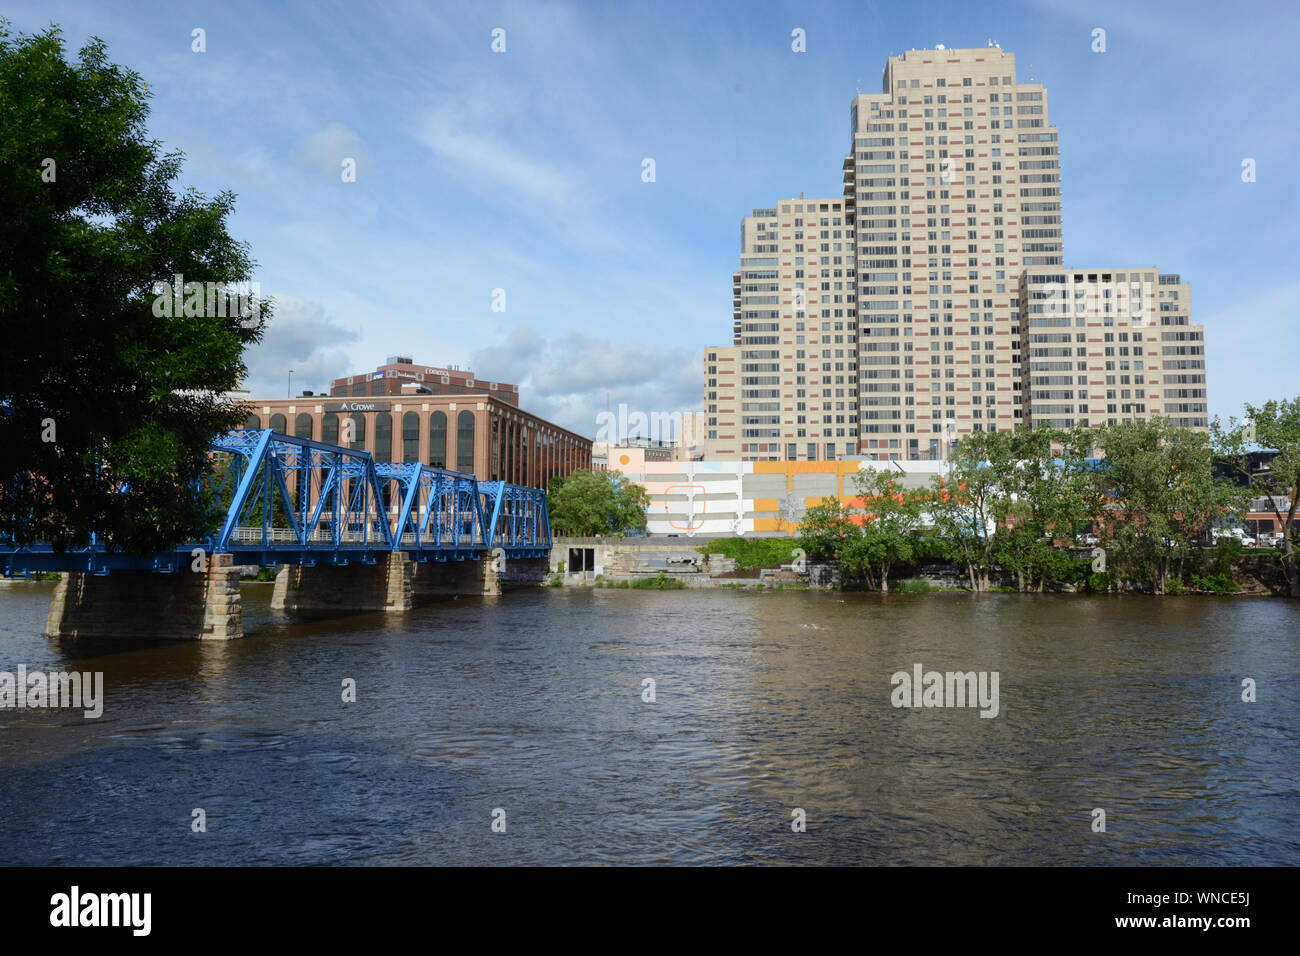 Grand Rapids, Michigan, où le bleu pont traverse la rivière Grand. Pont piétonnier populaires. Centre-ville le long du fleuve. Banque D'Images